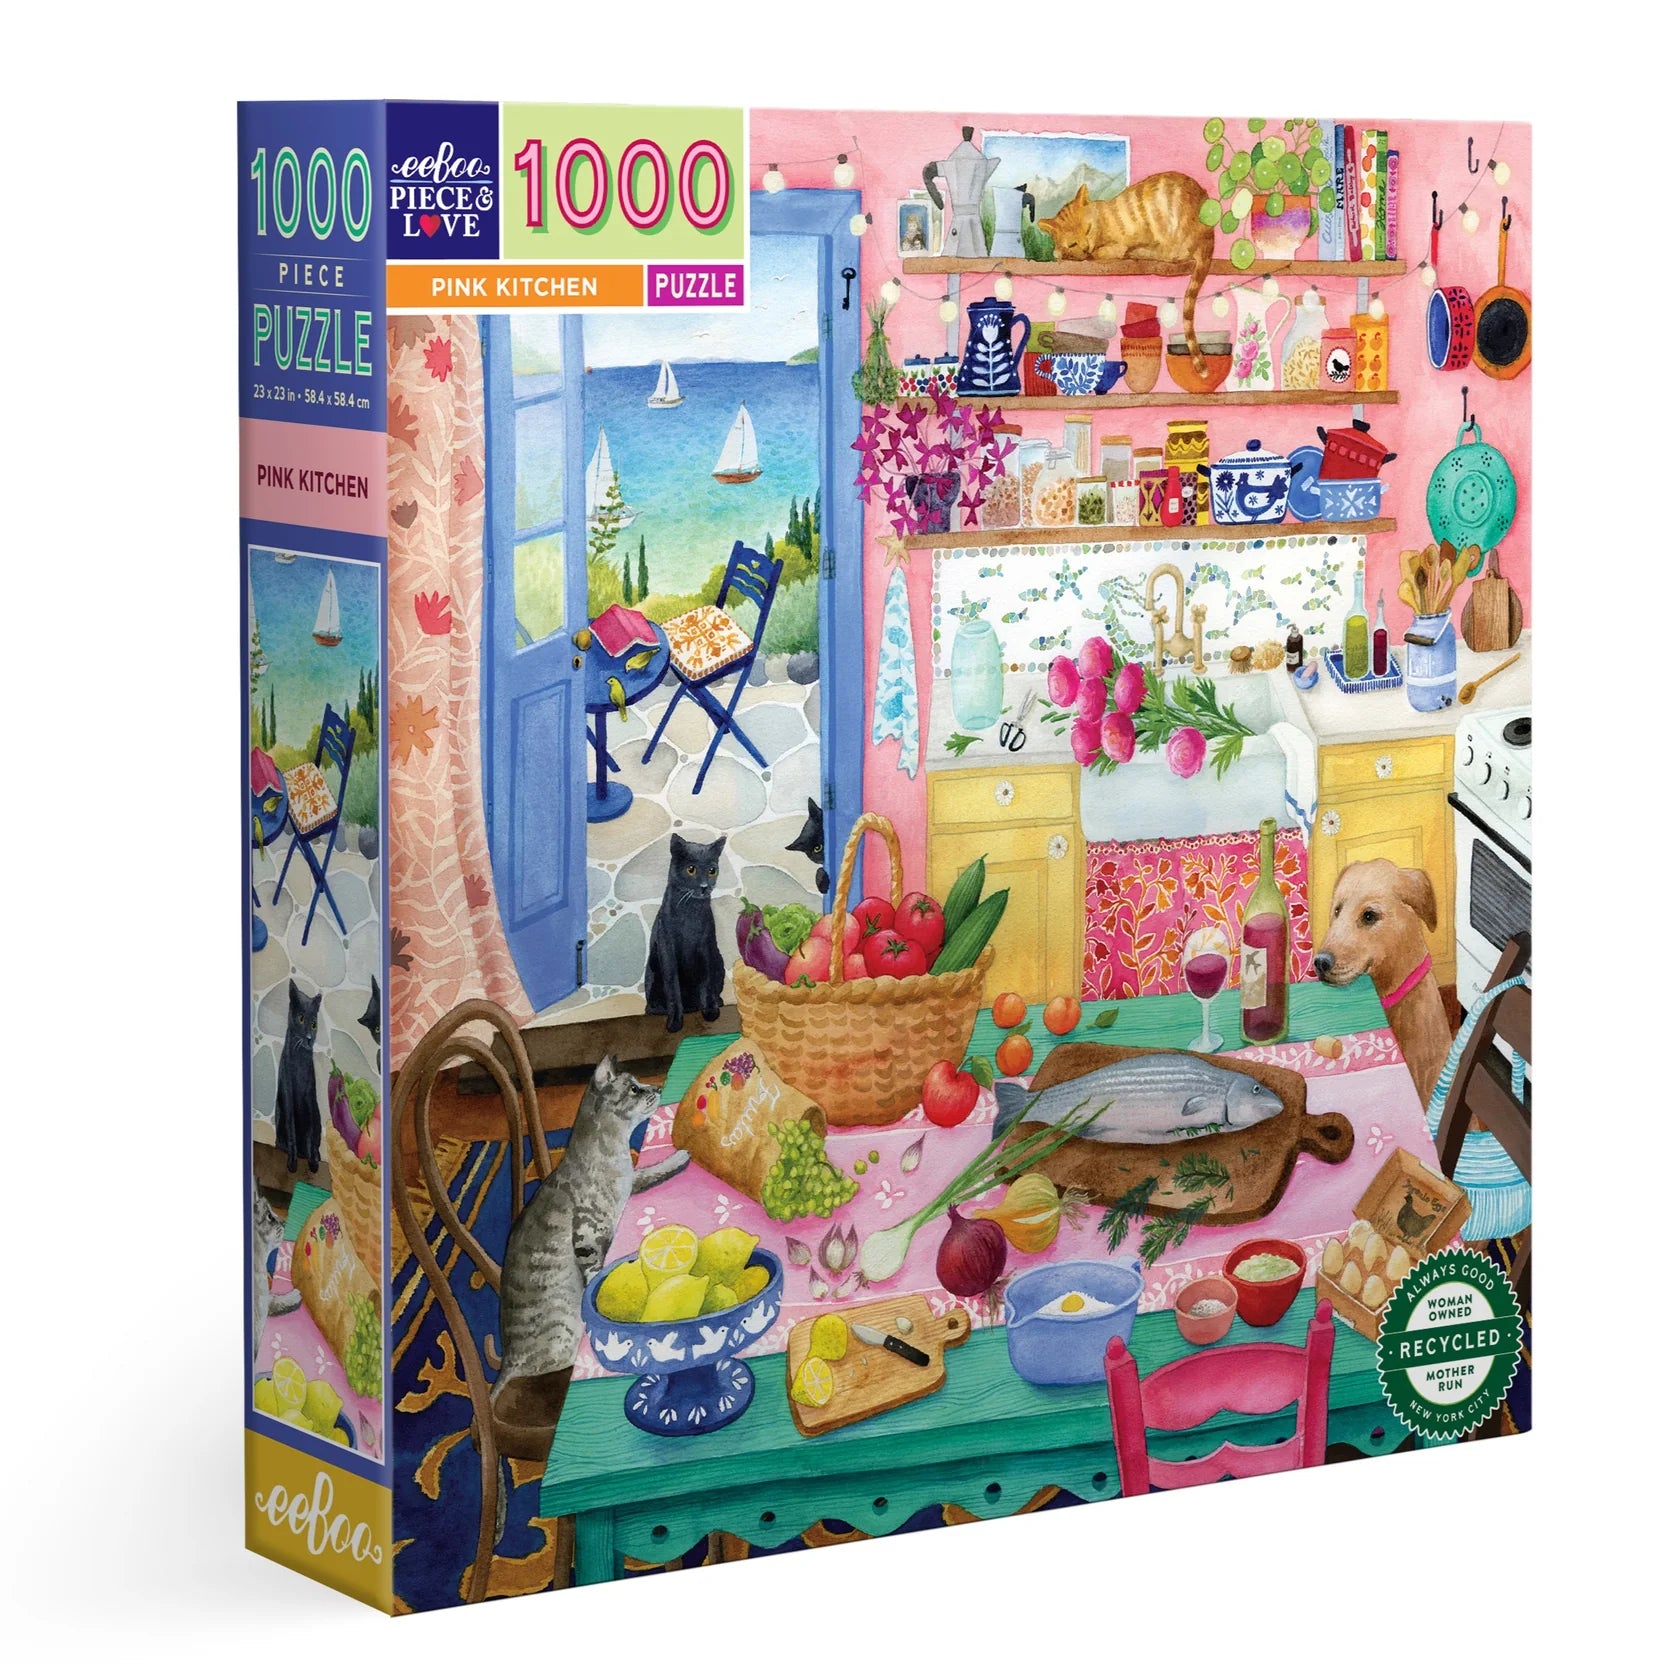 Pink Kitchen 1000 piece puzzle